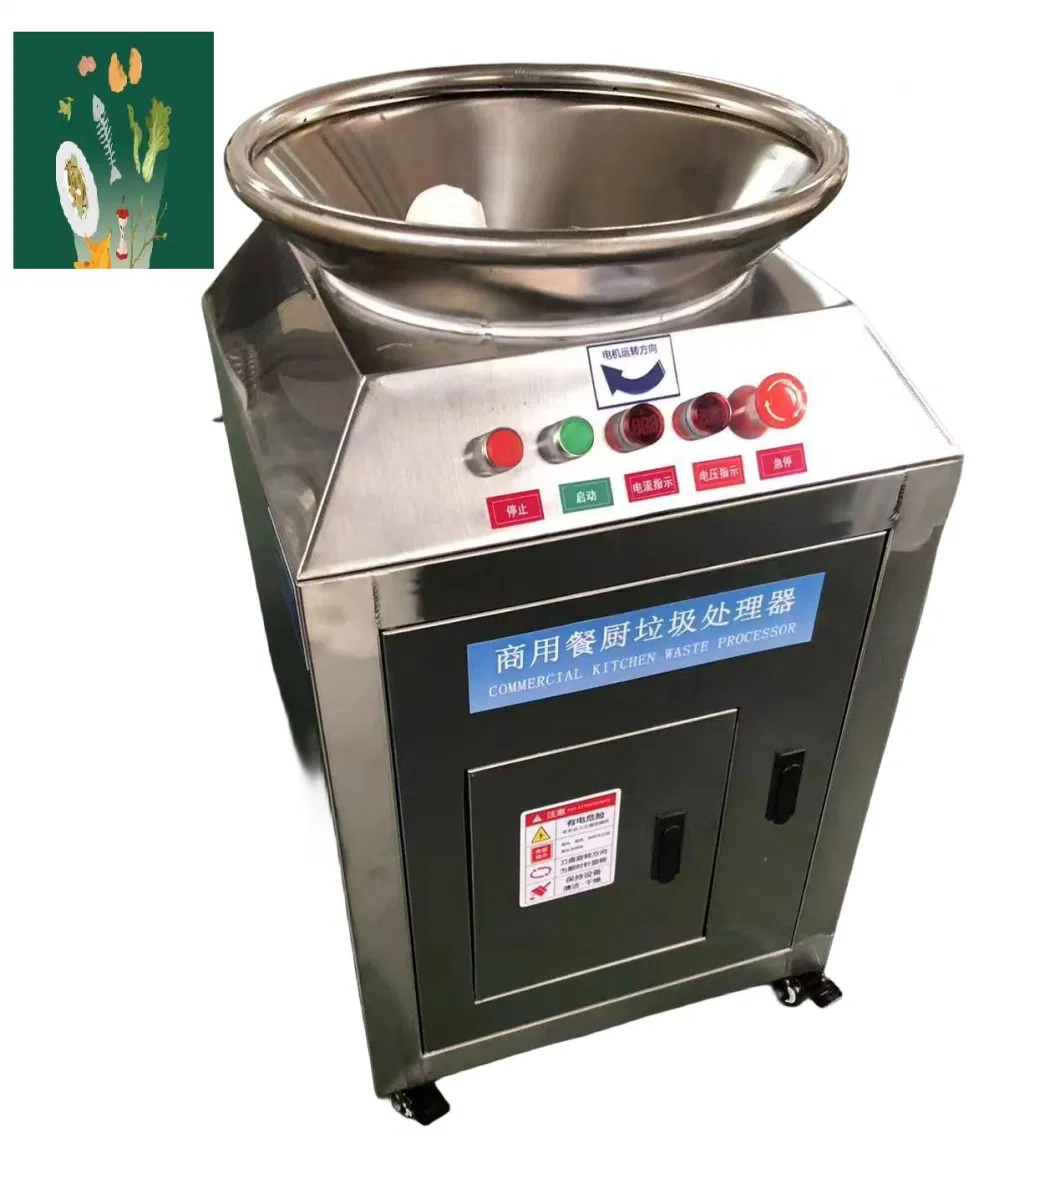 Commercial Kitchen Food Waste Composting Machine Waste Disposal Machine Kitchen